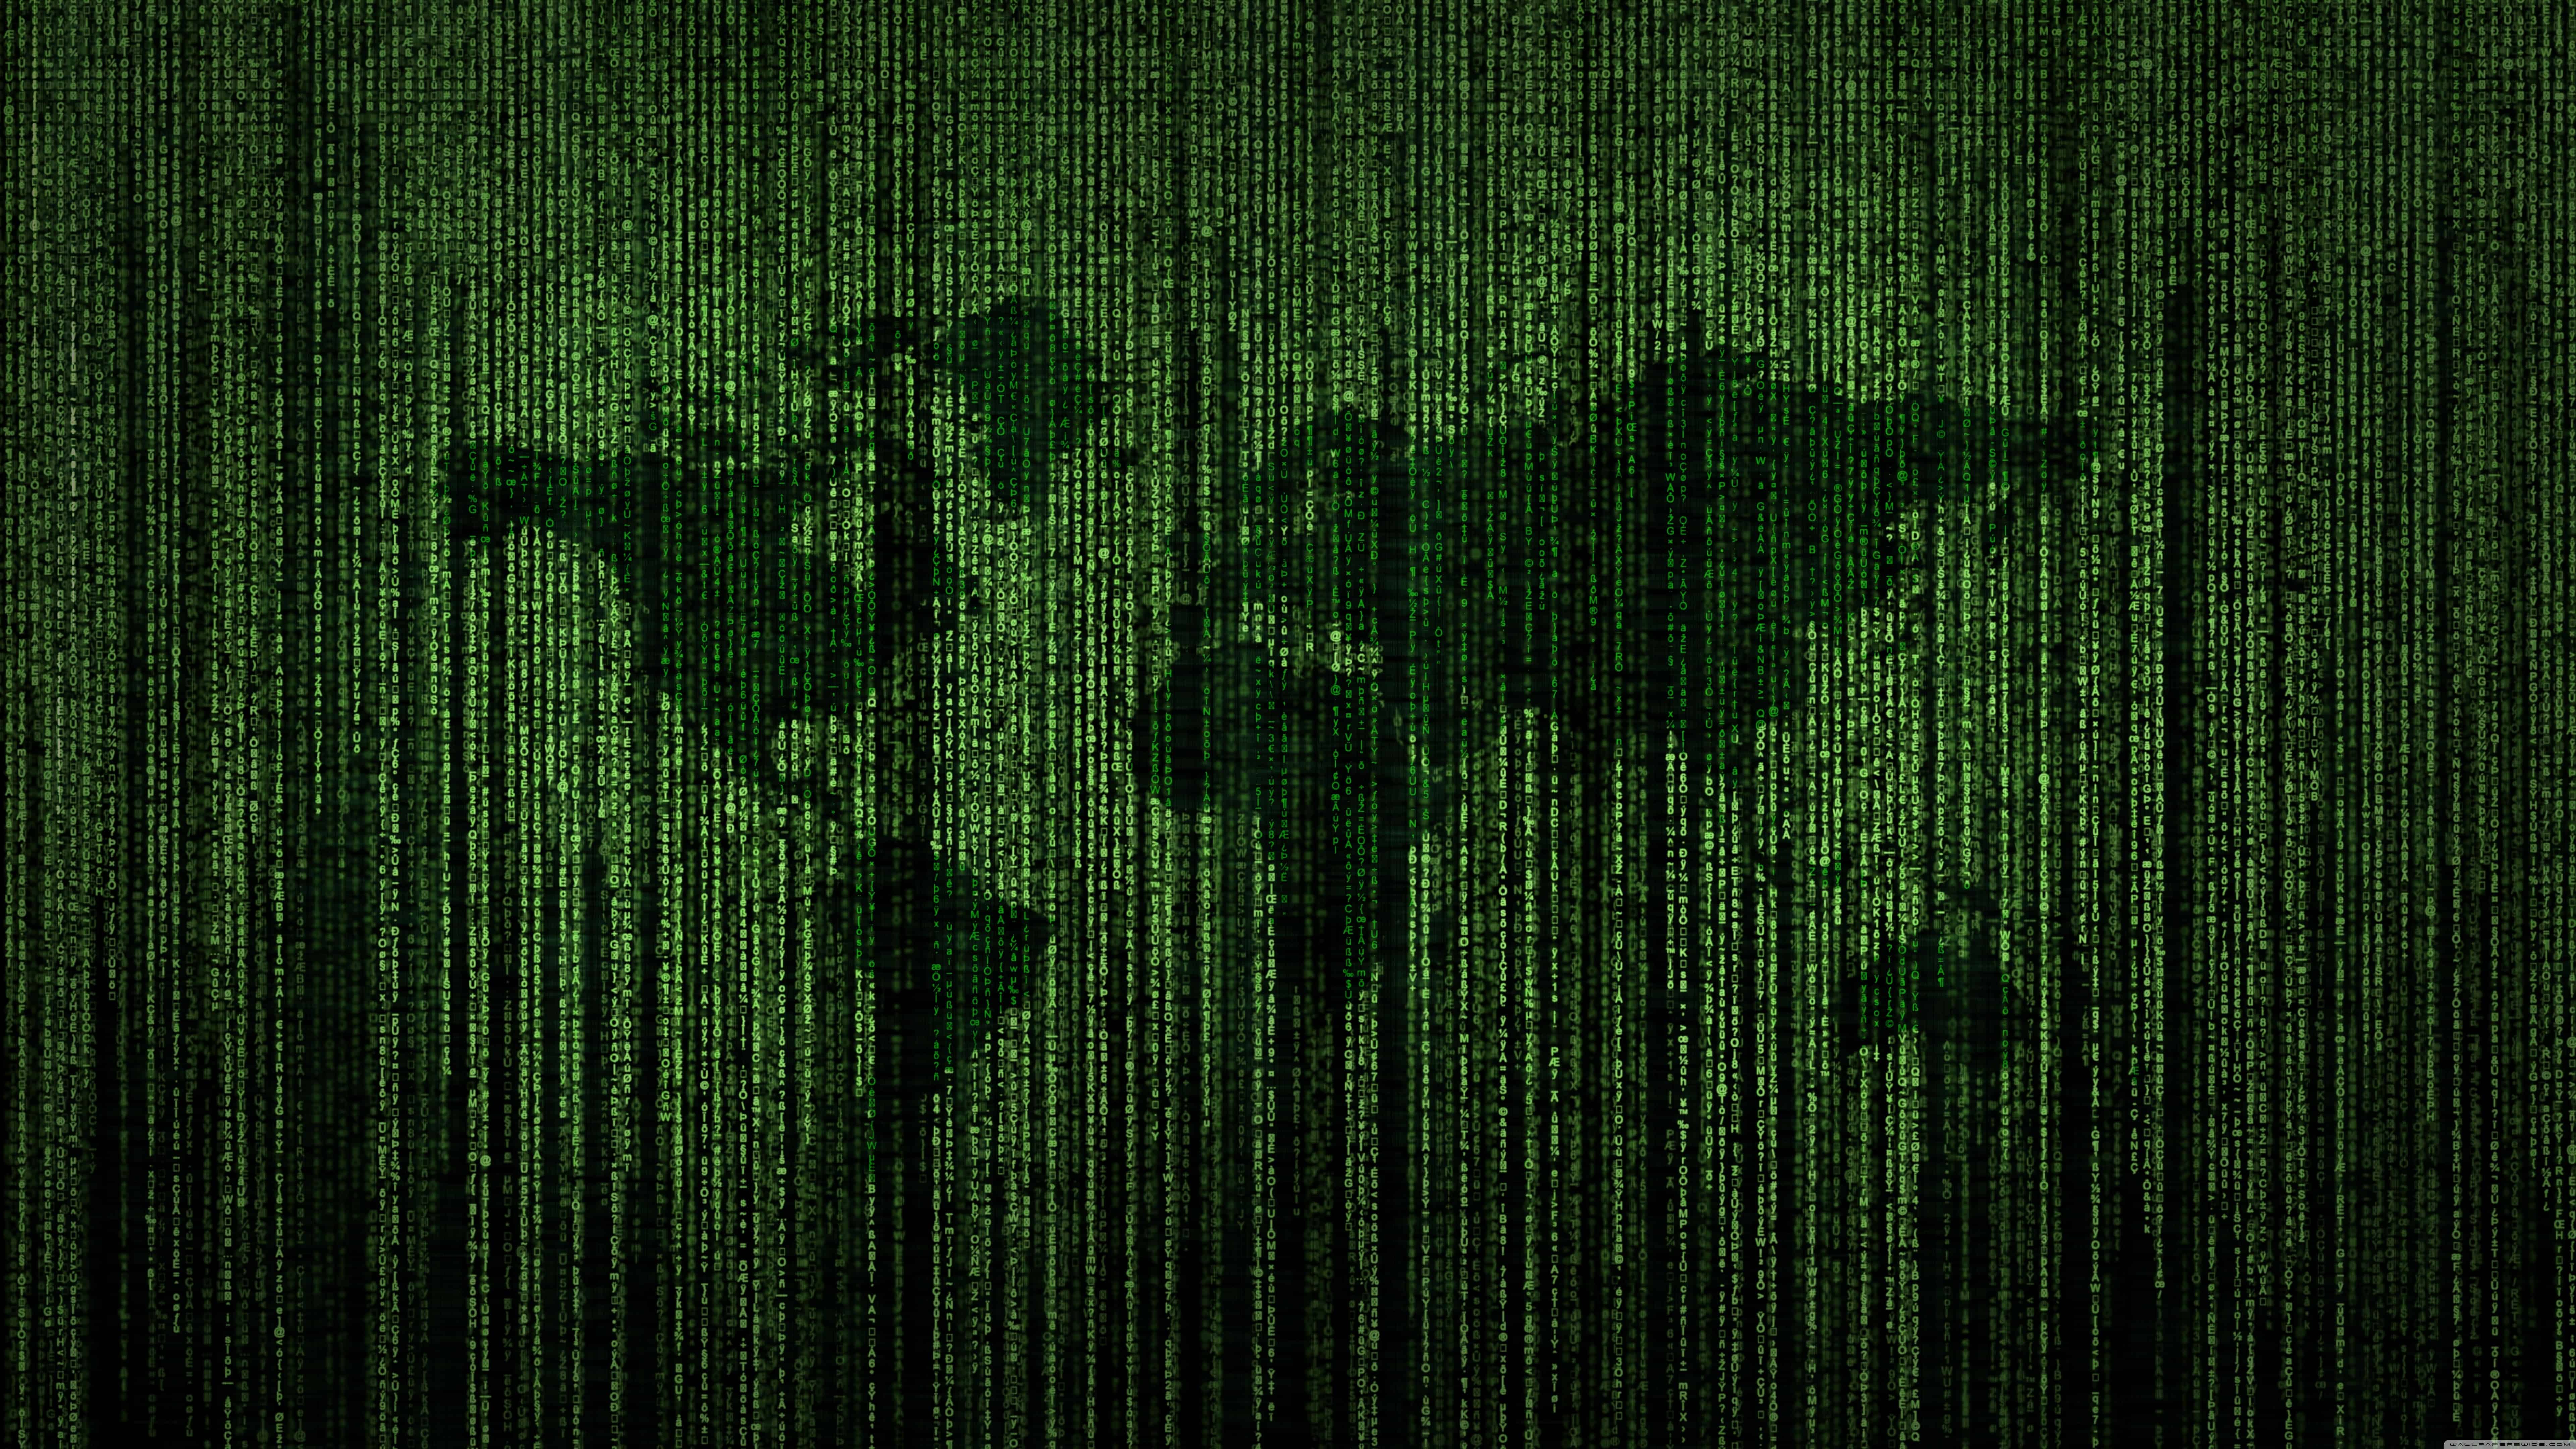 Green Matrix Code World Map UHD 8K Wallpaper